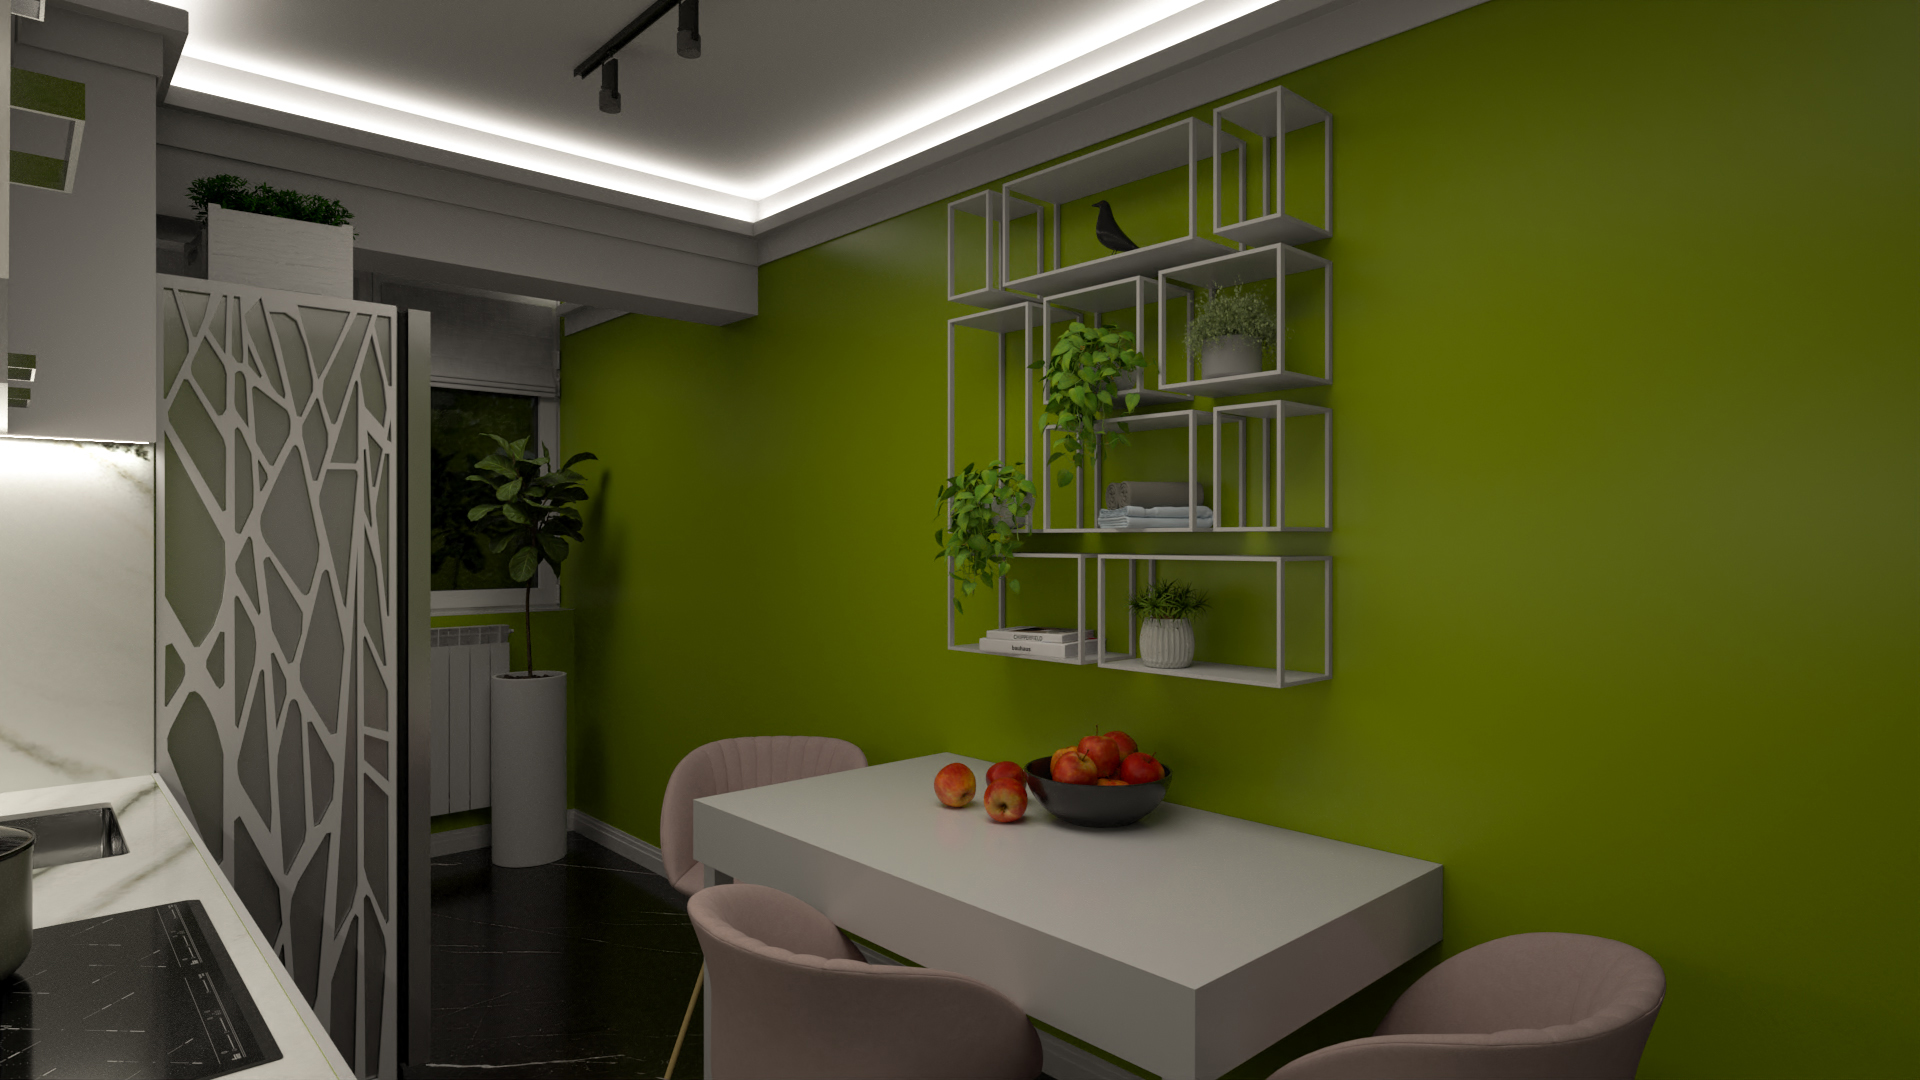 Kitchen visualization - Bitopia 3D rendering studio